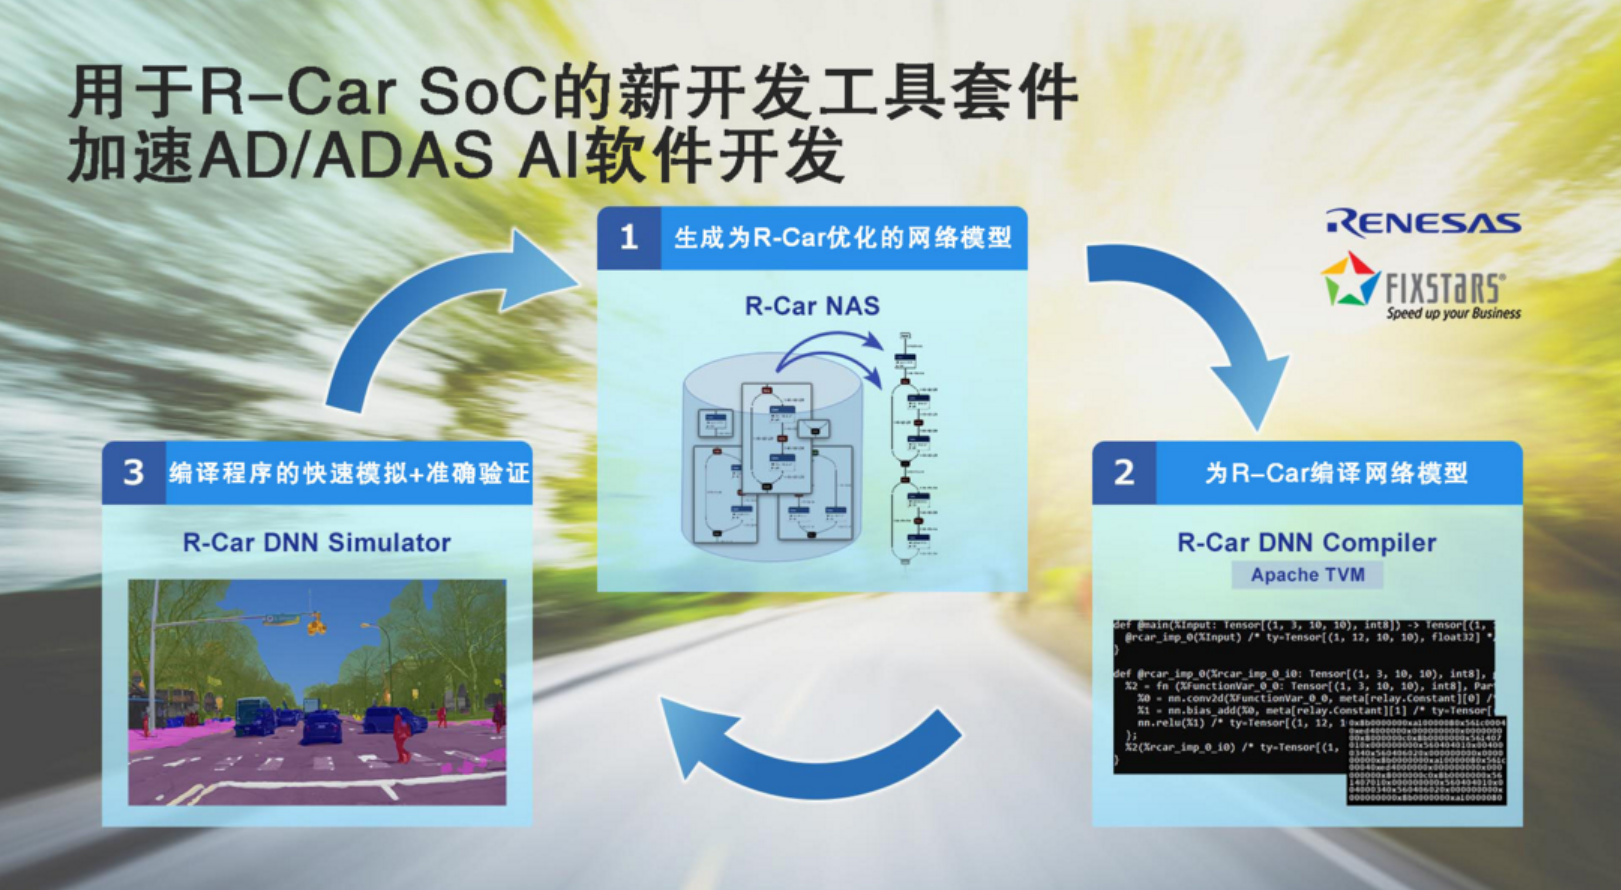 瑞萨电子将与Fixstars联合开发工具套件 用于优化R-Car SoC AD/ADAS AI软件